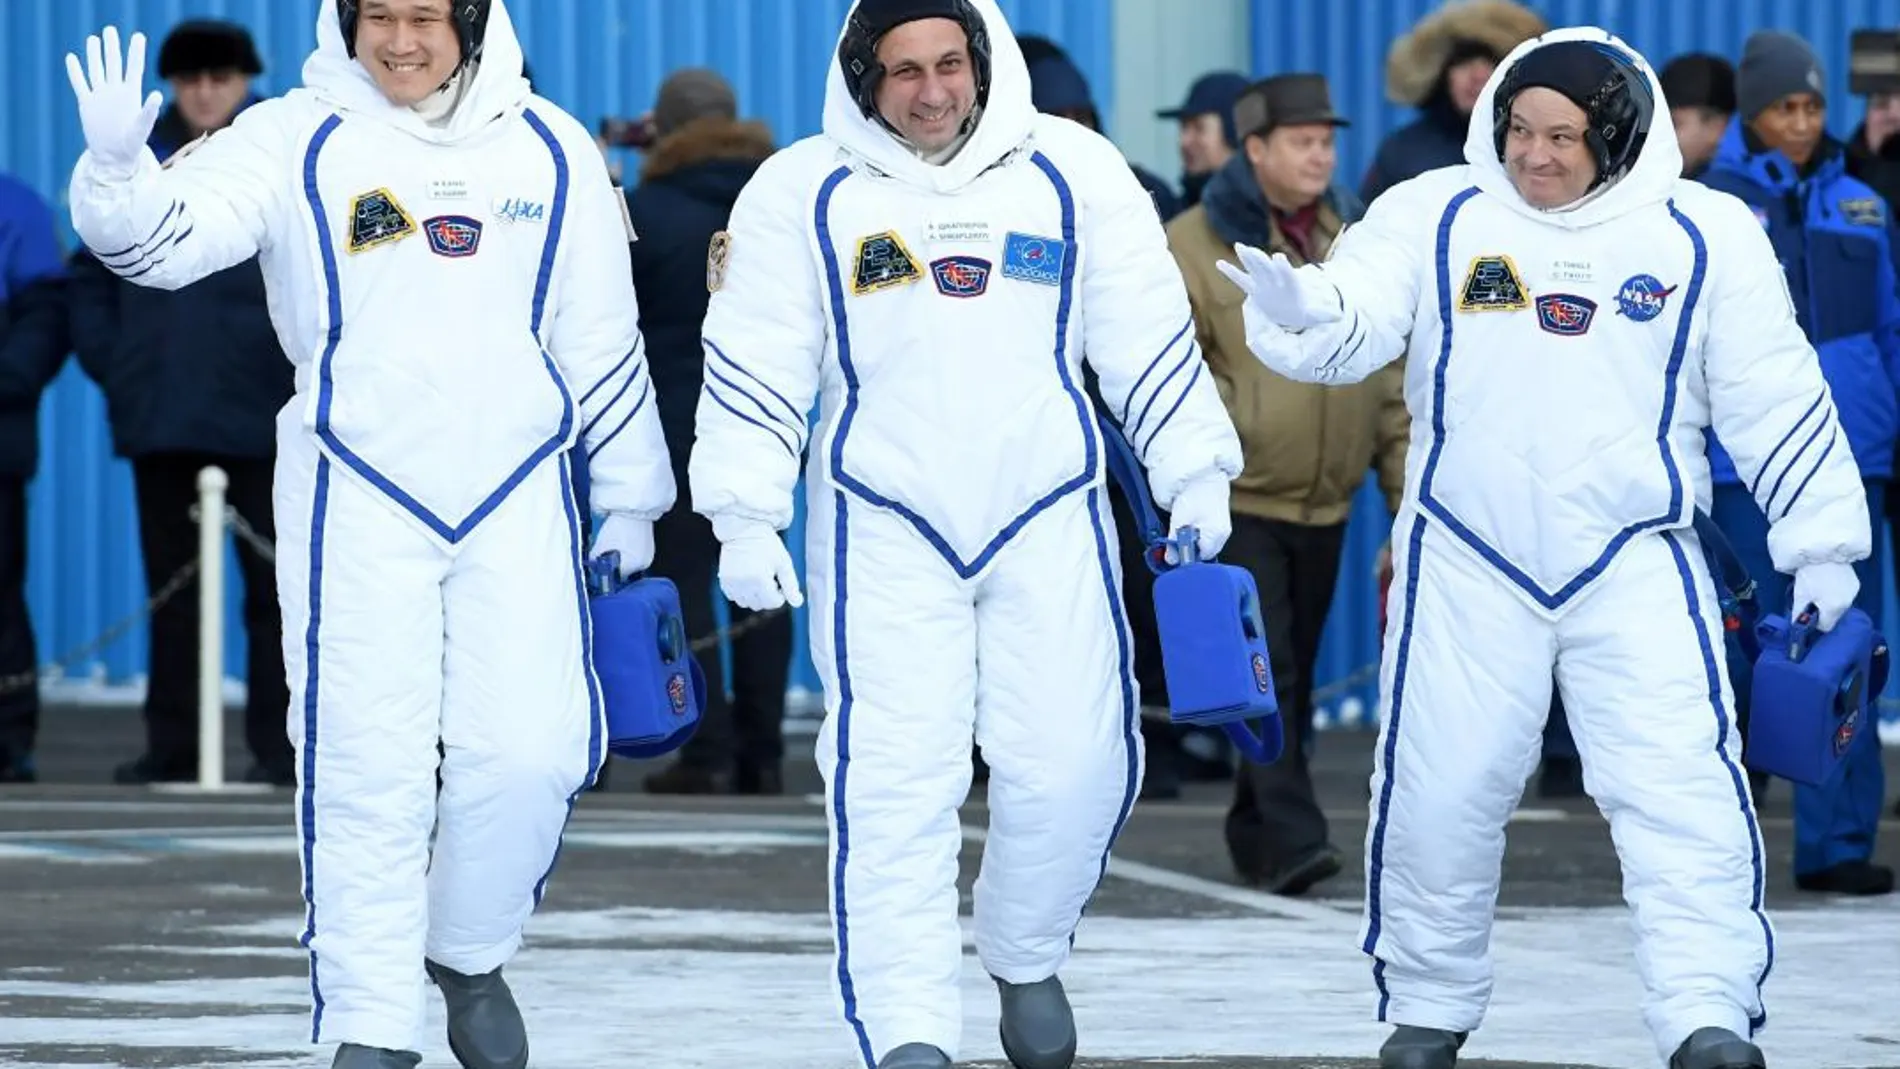 El astronauta japonés Norishige Kanai (JAXA), el cosmonauta ruso Anton Shkaplerov (Roscosmos) y el astronauta estadounidense Scott Tingle (NASA)